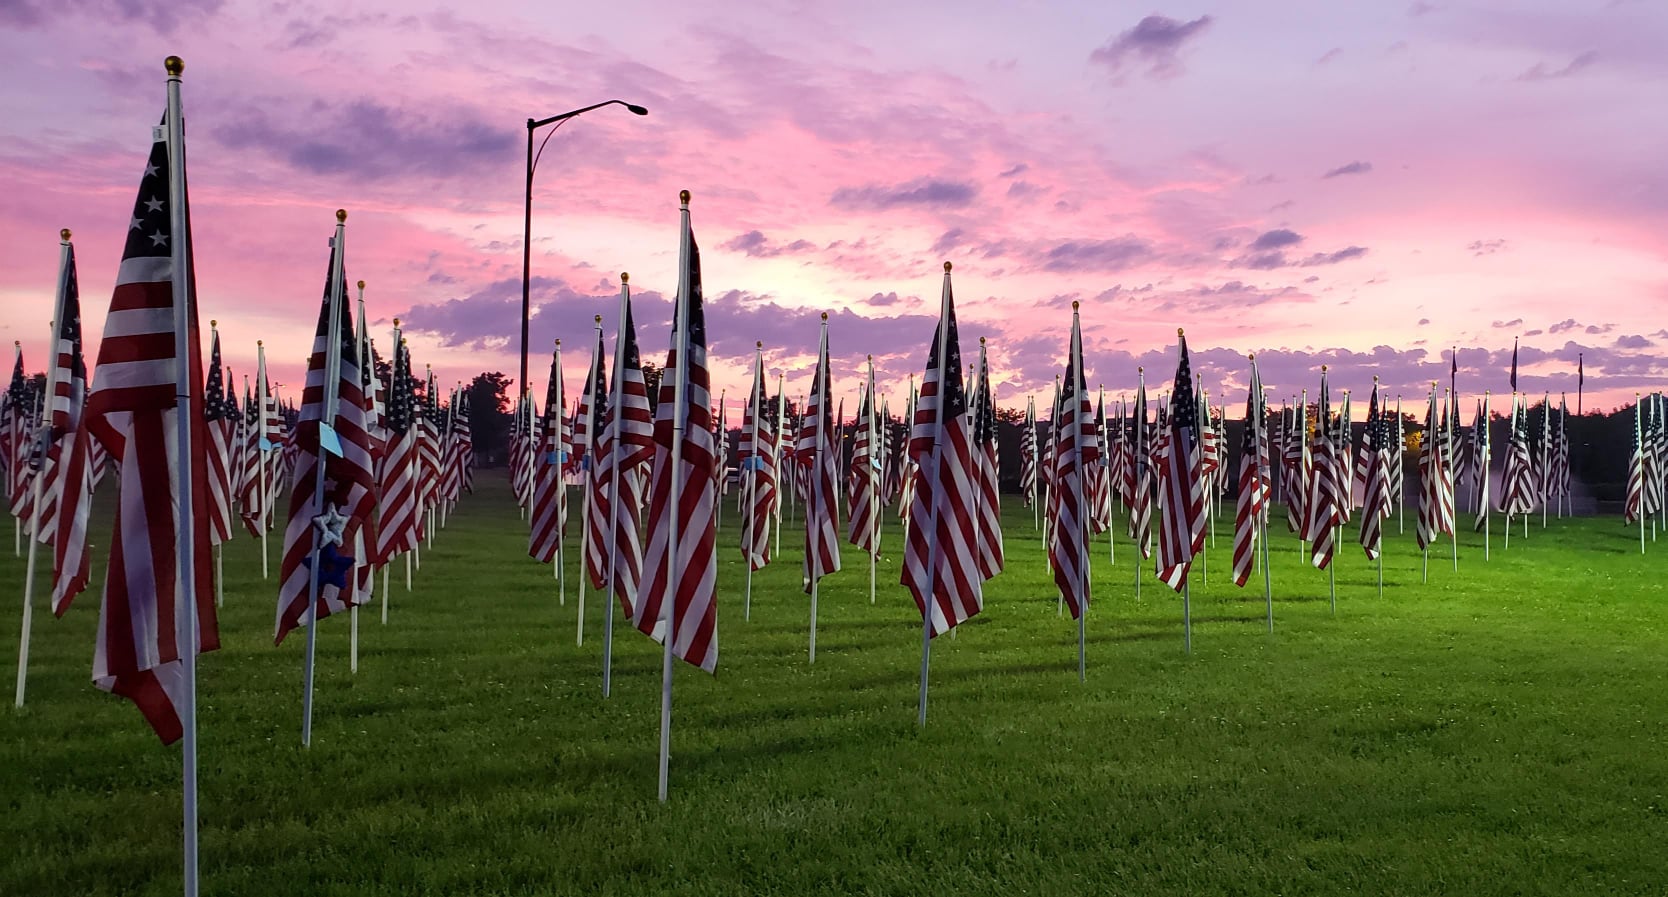 Field of Heroes memorial in Westerville